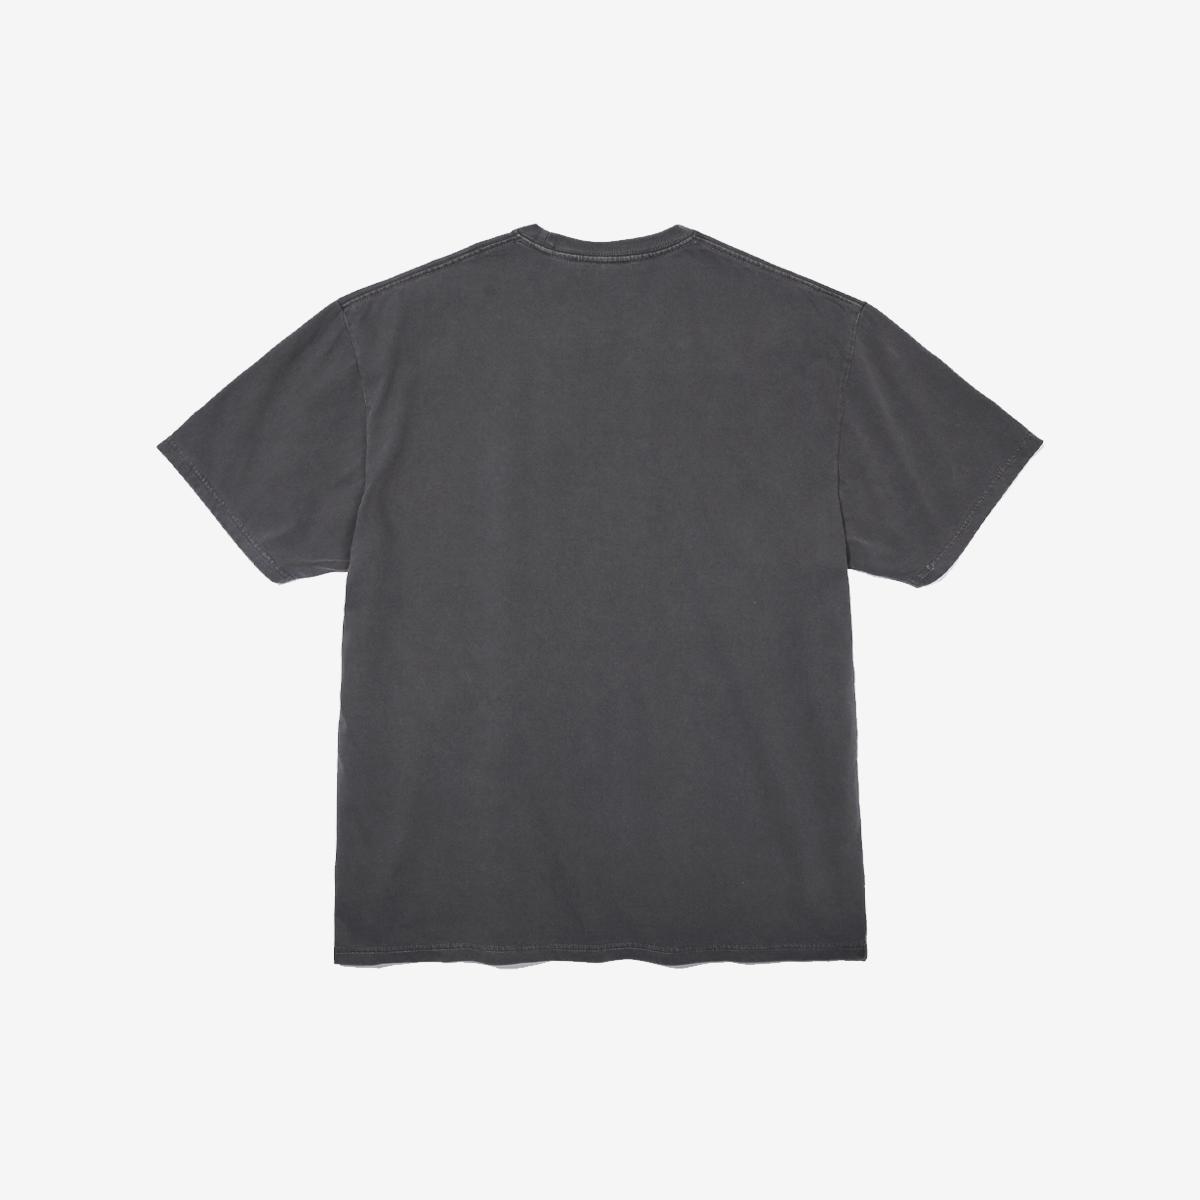 弧形小LOGO短袖T恤兩件組（白色/水洗黑炭色）